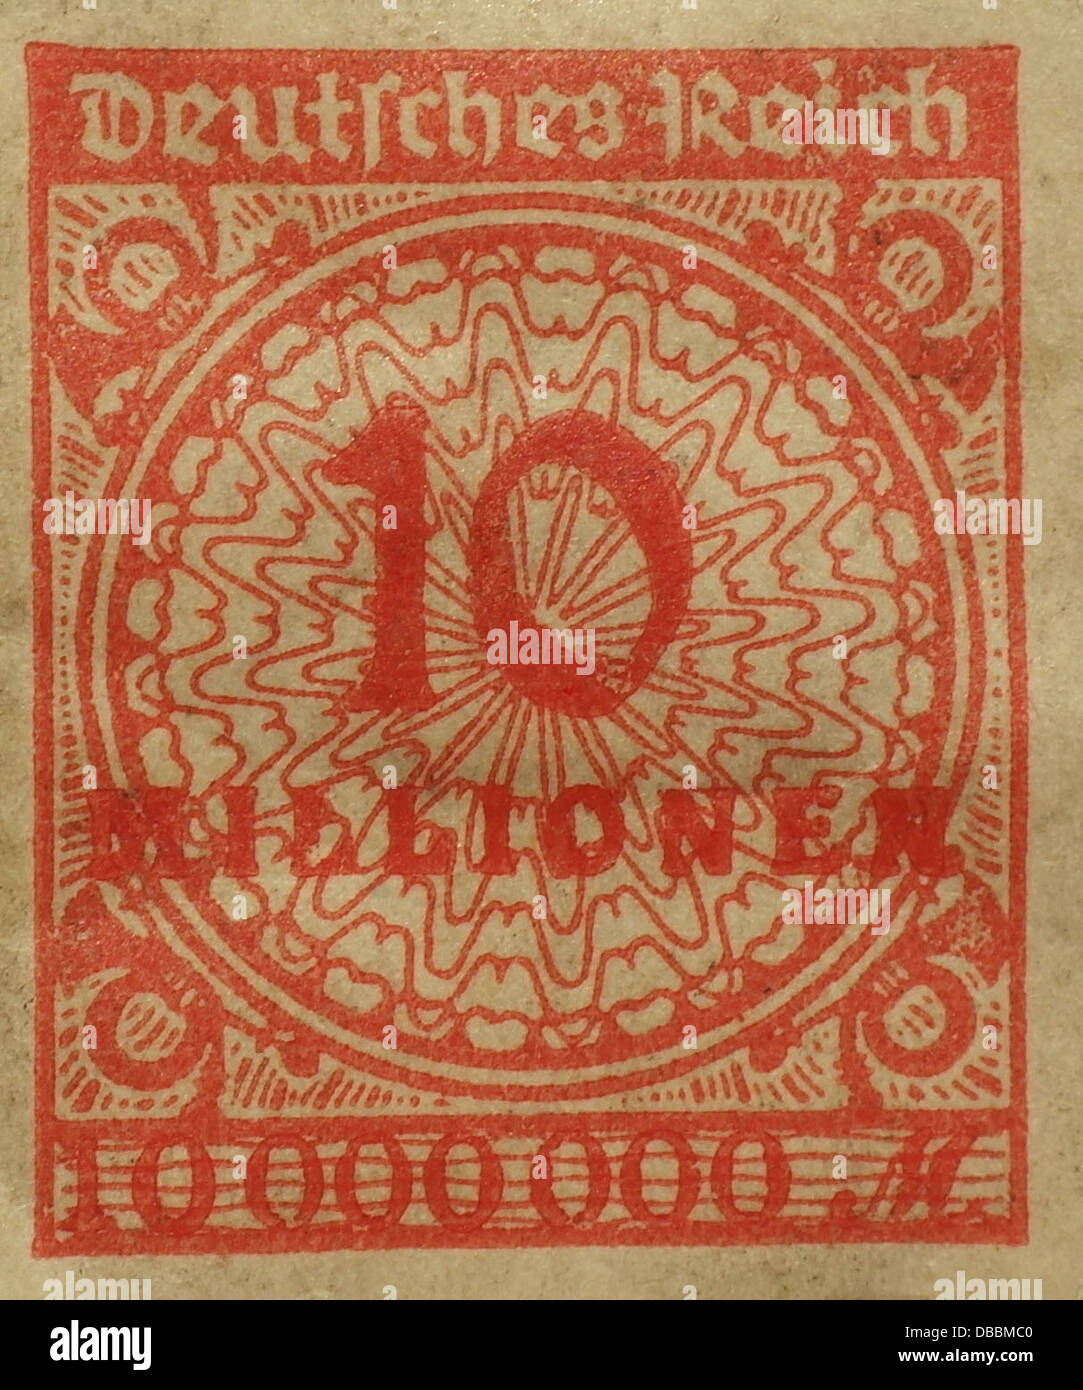 Rot 10 Millionen Mark Briefmarke aus dem Jahr 1923, wenn Hyperinflation der Weimarer Republik Deutschland betroffen Stockfoto